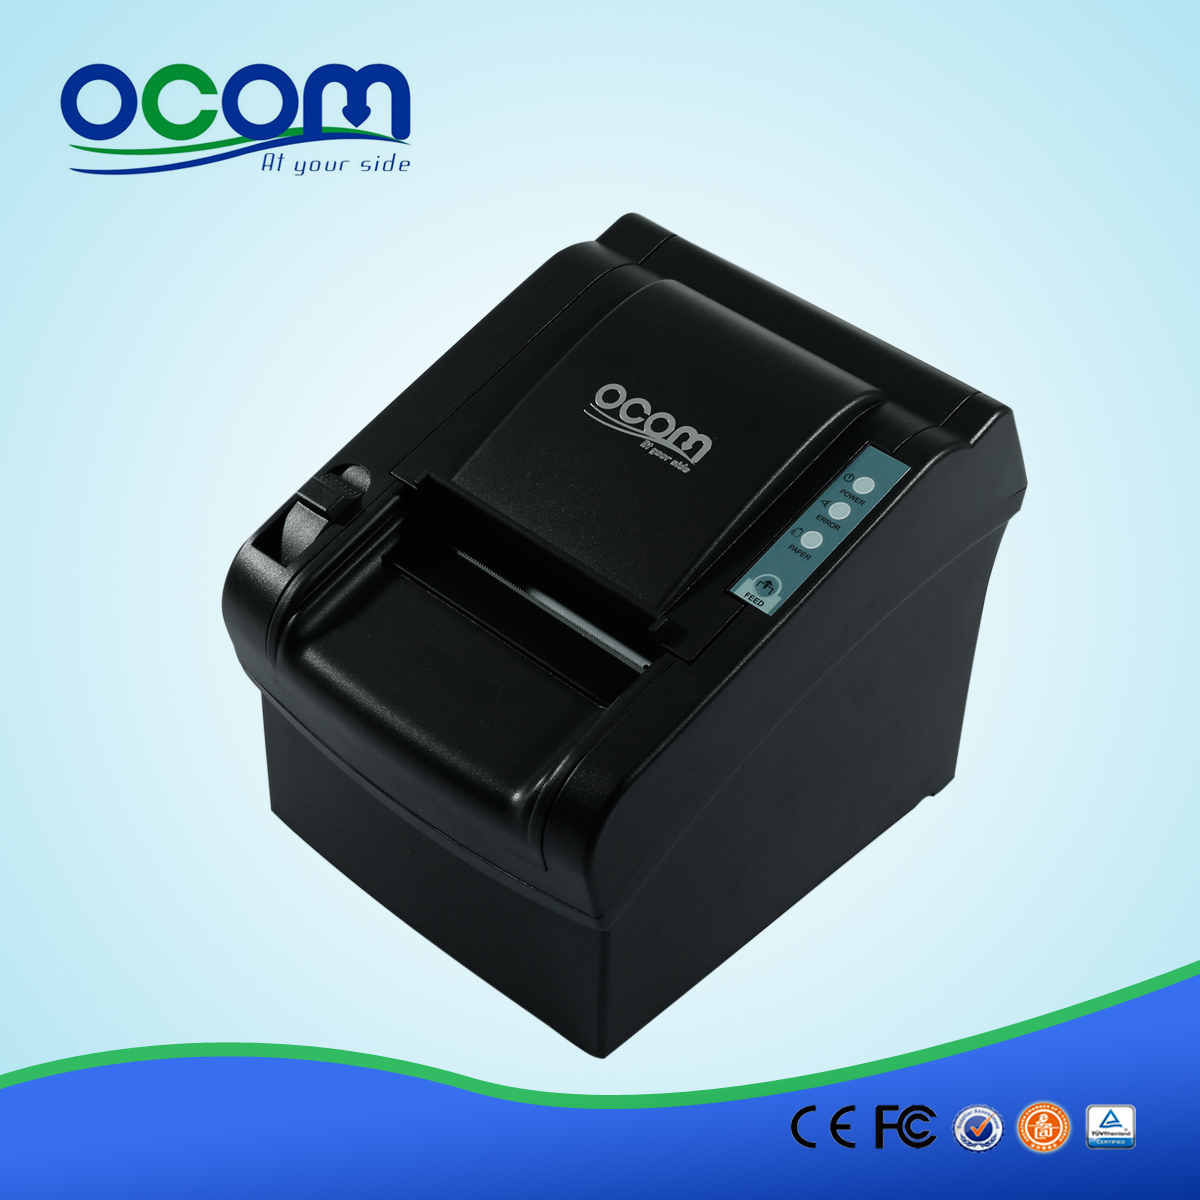 80mm Manual Cortador Impresora térmica de recibos - OCPP-802